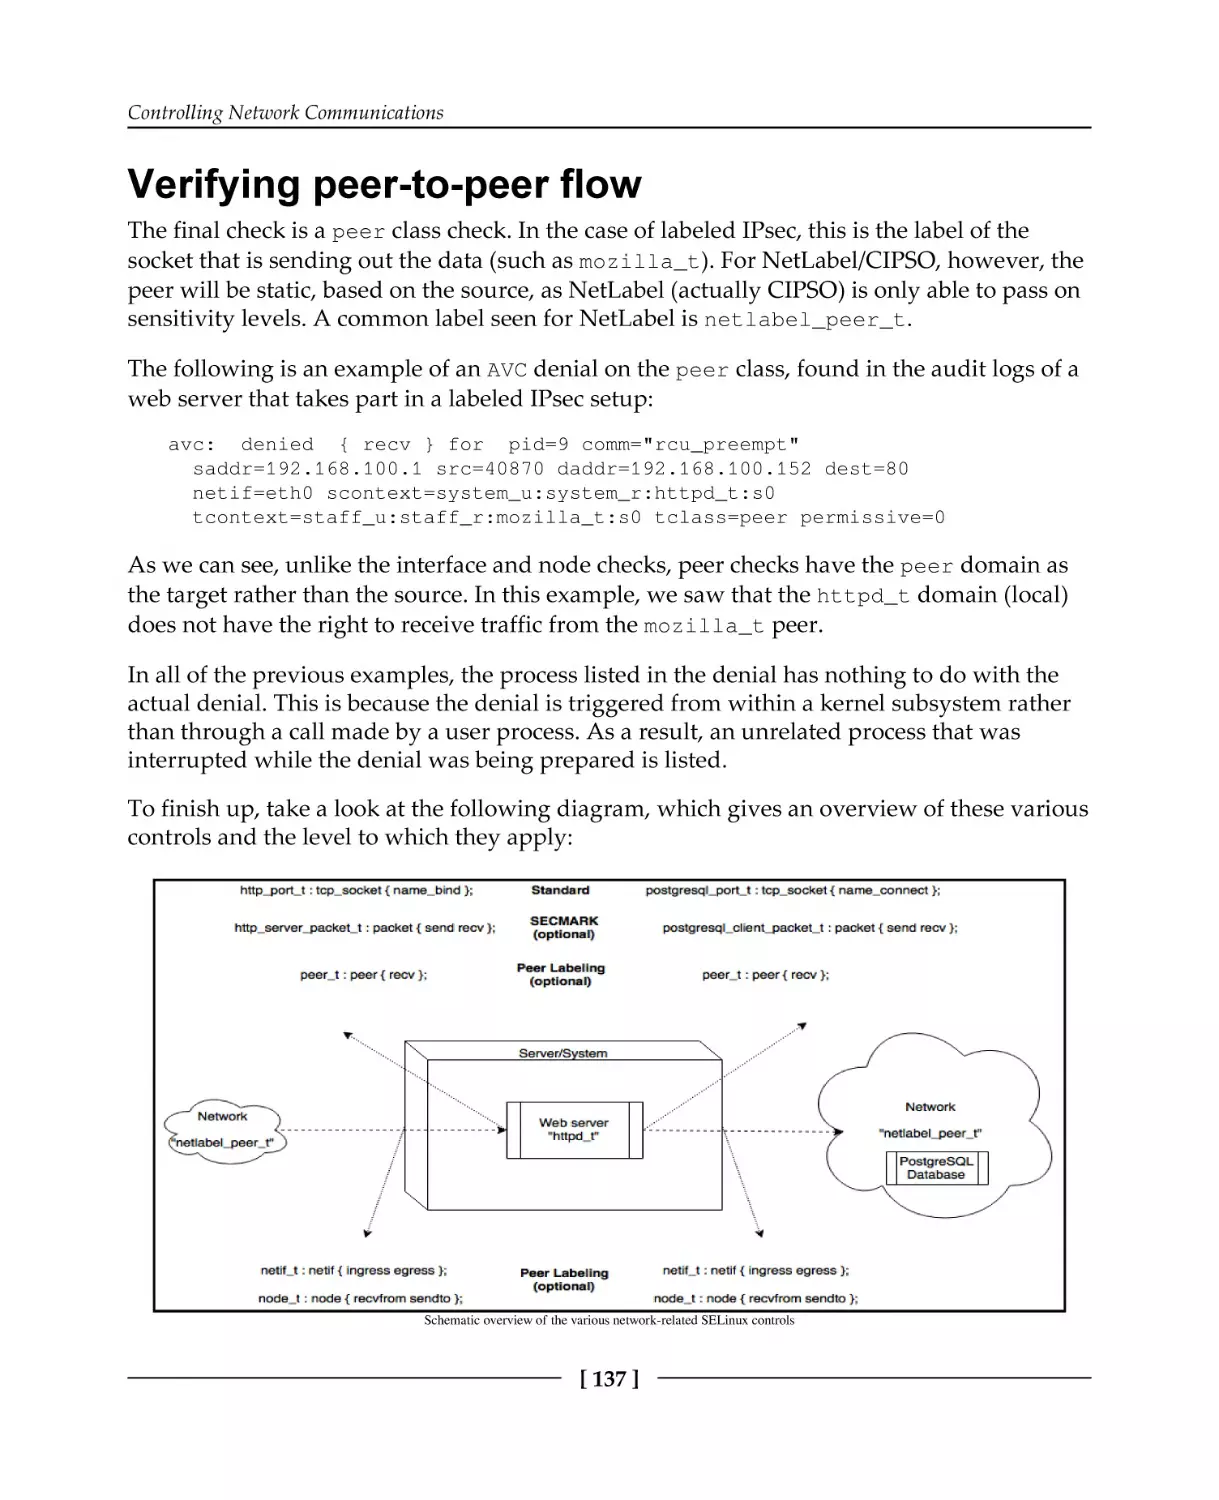 Verifying peer-to-peer flow